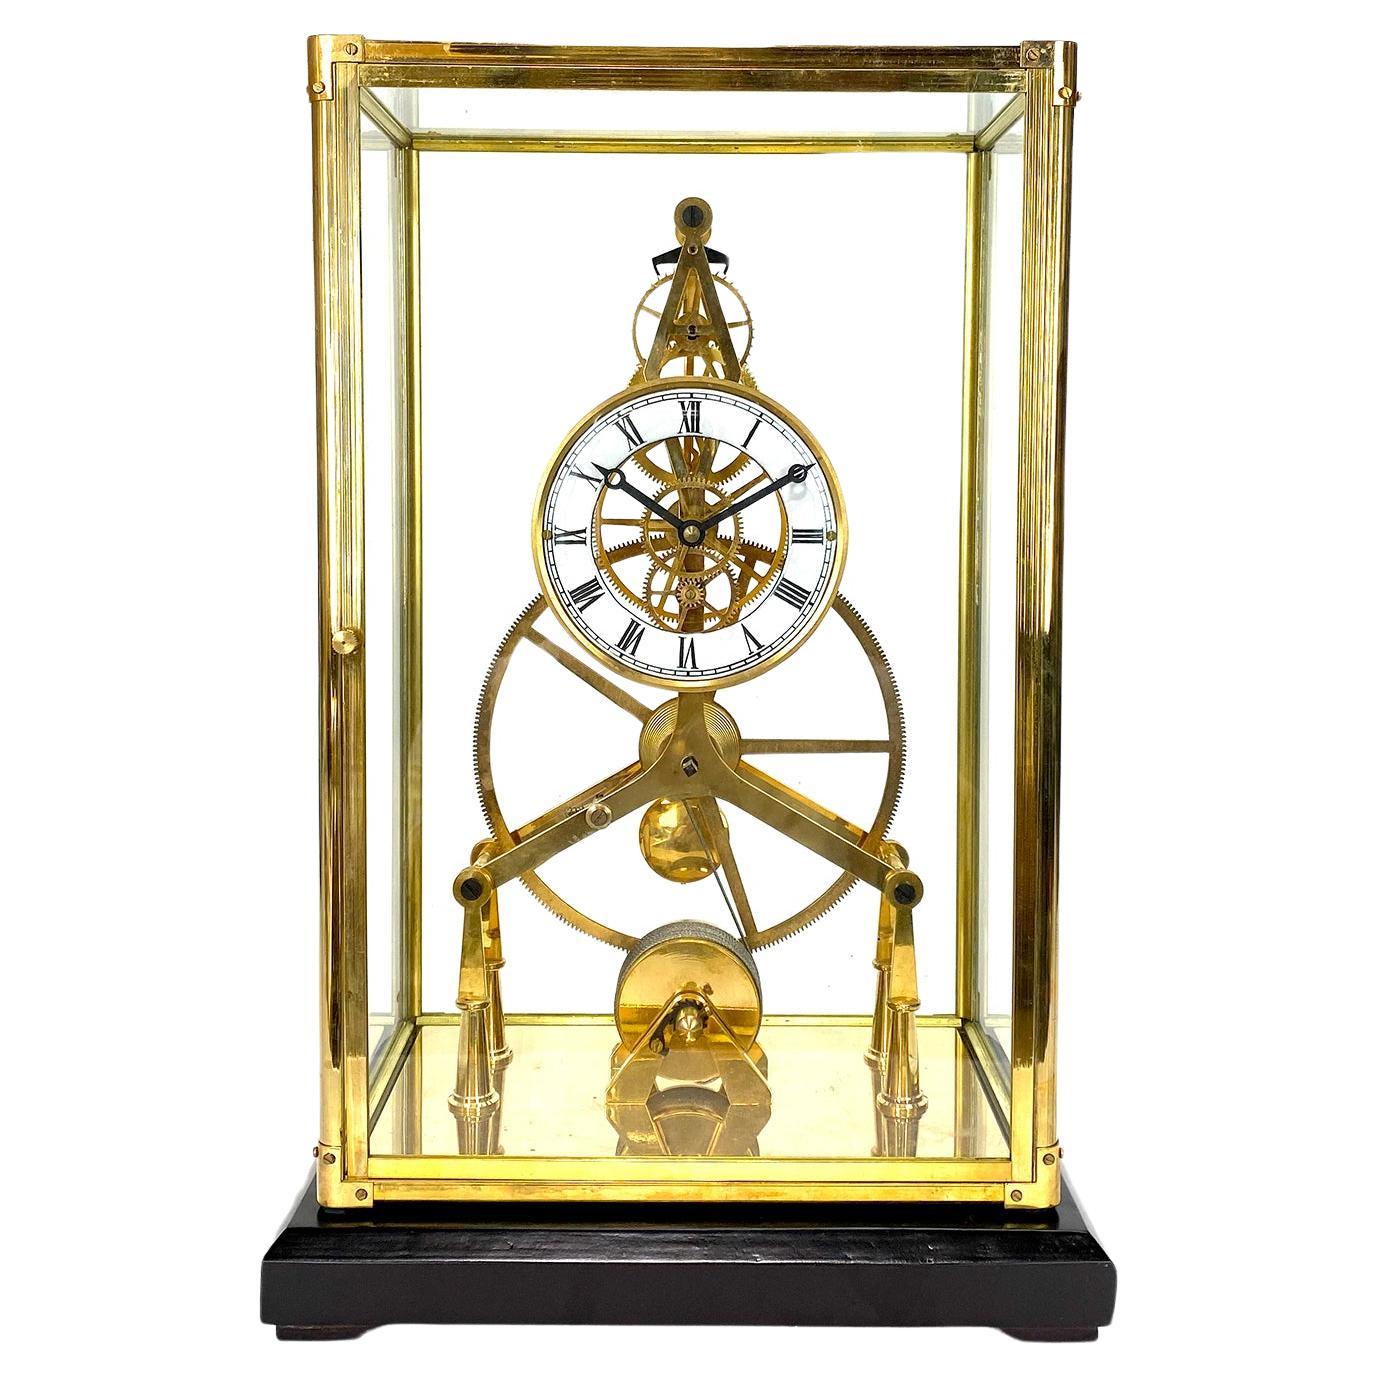 24K Gold plattiert 8 Day Great Wheel Fusee angetrieben Porzellan Zifferblatt Skelett Uhr